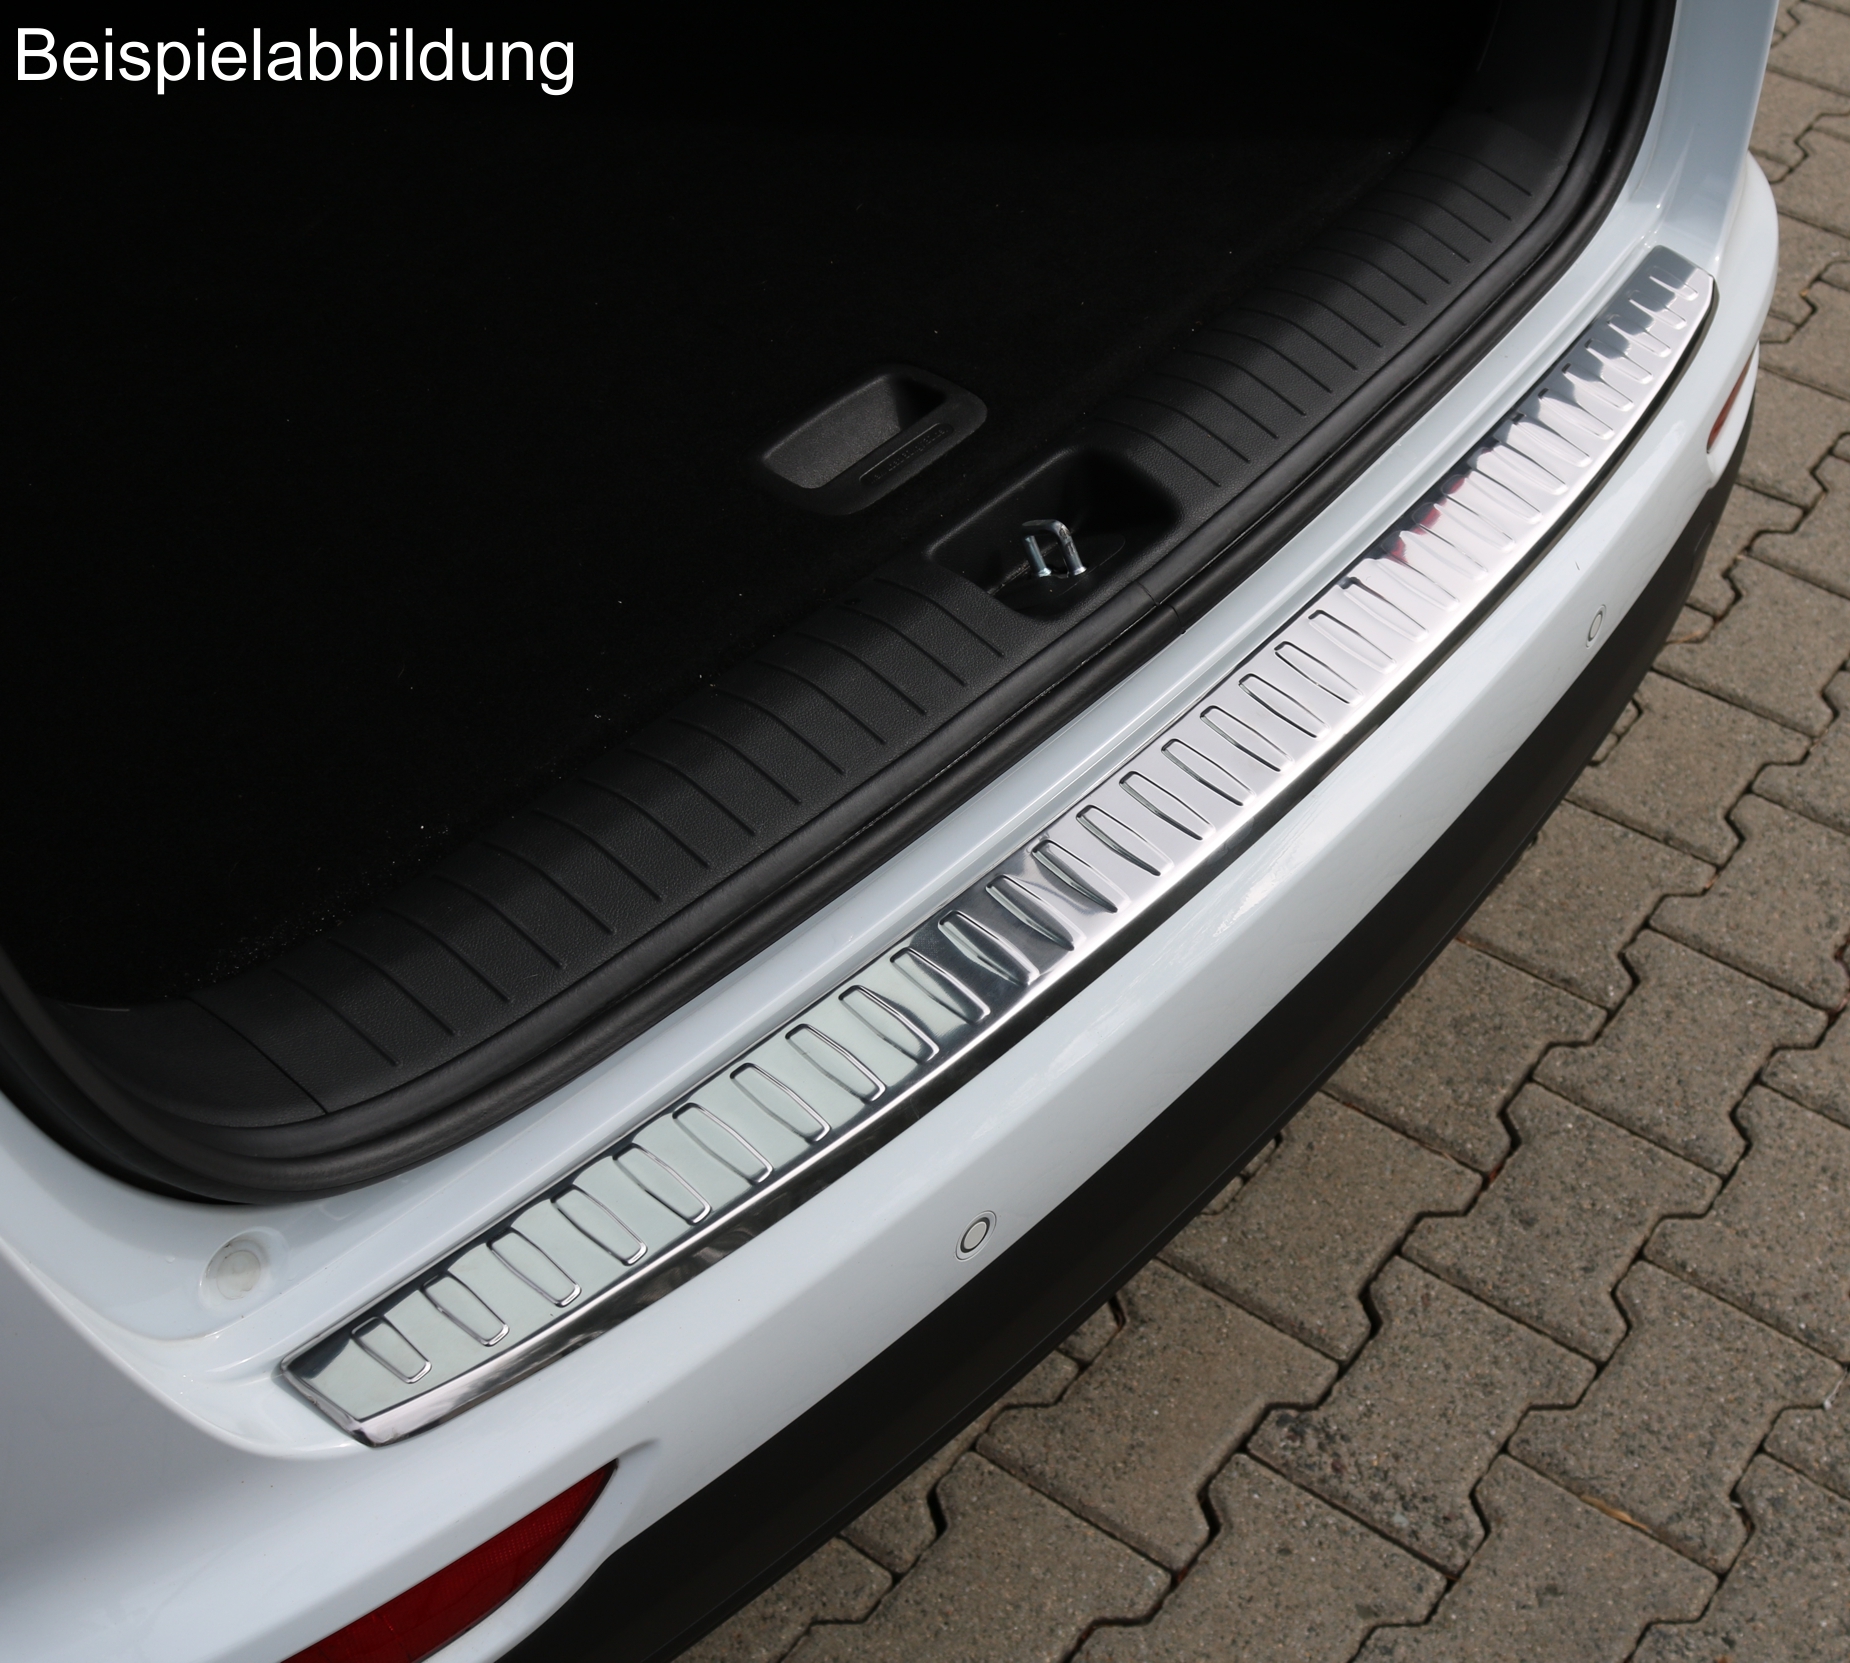 Ladekantenschutz in Chrom für VW Passat 3G B8